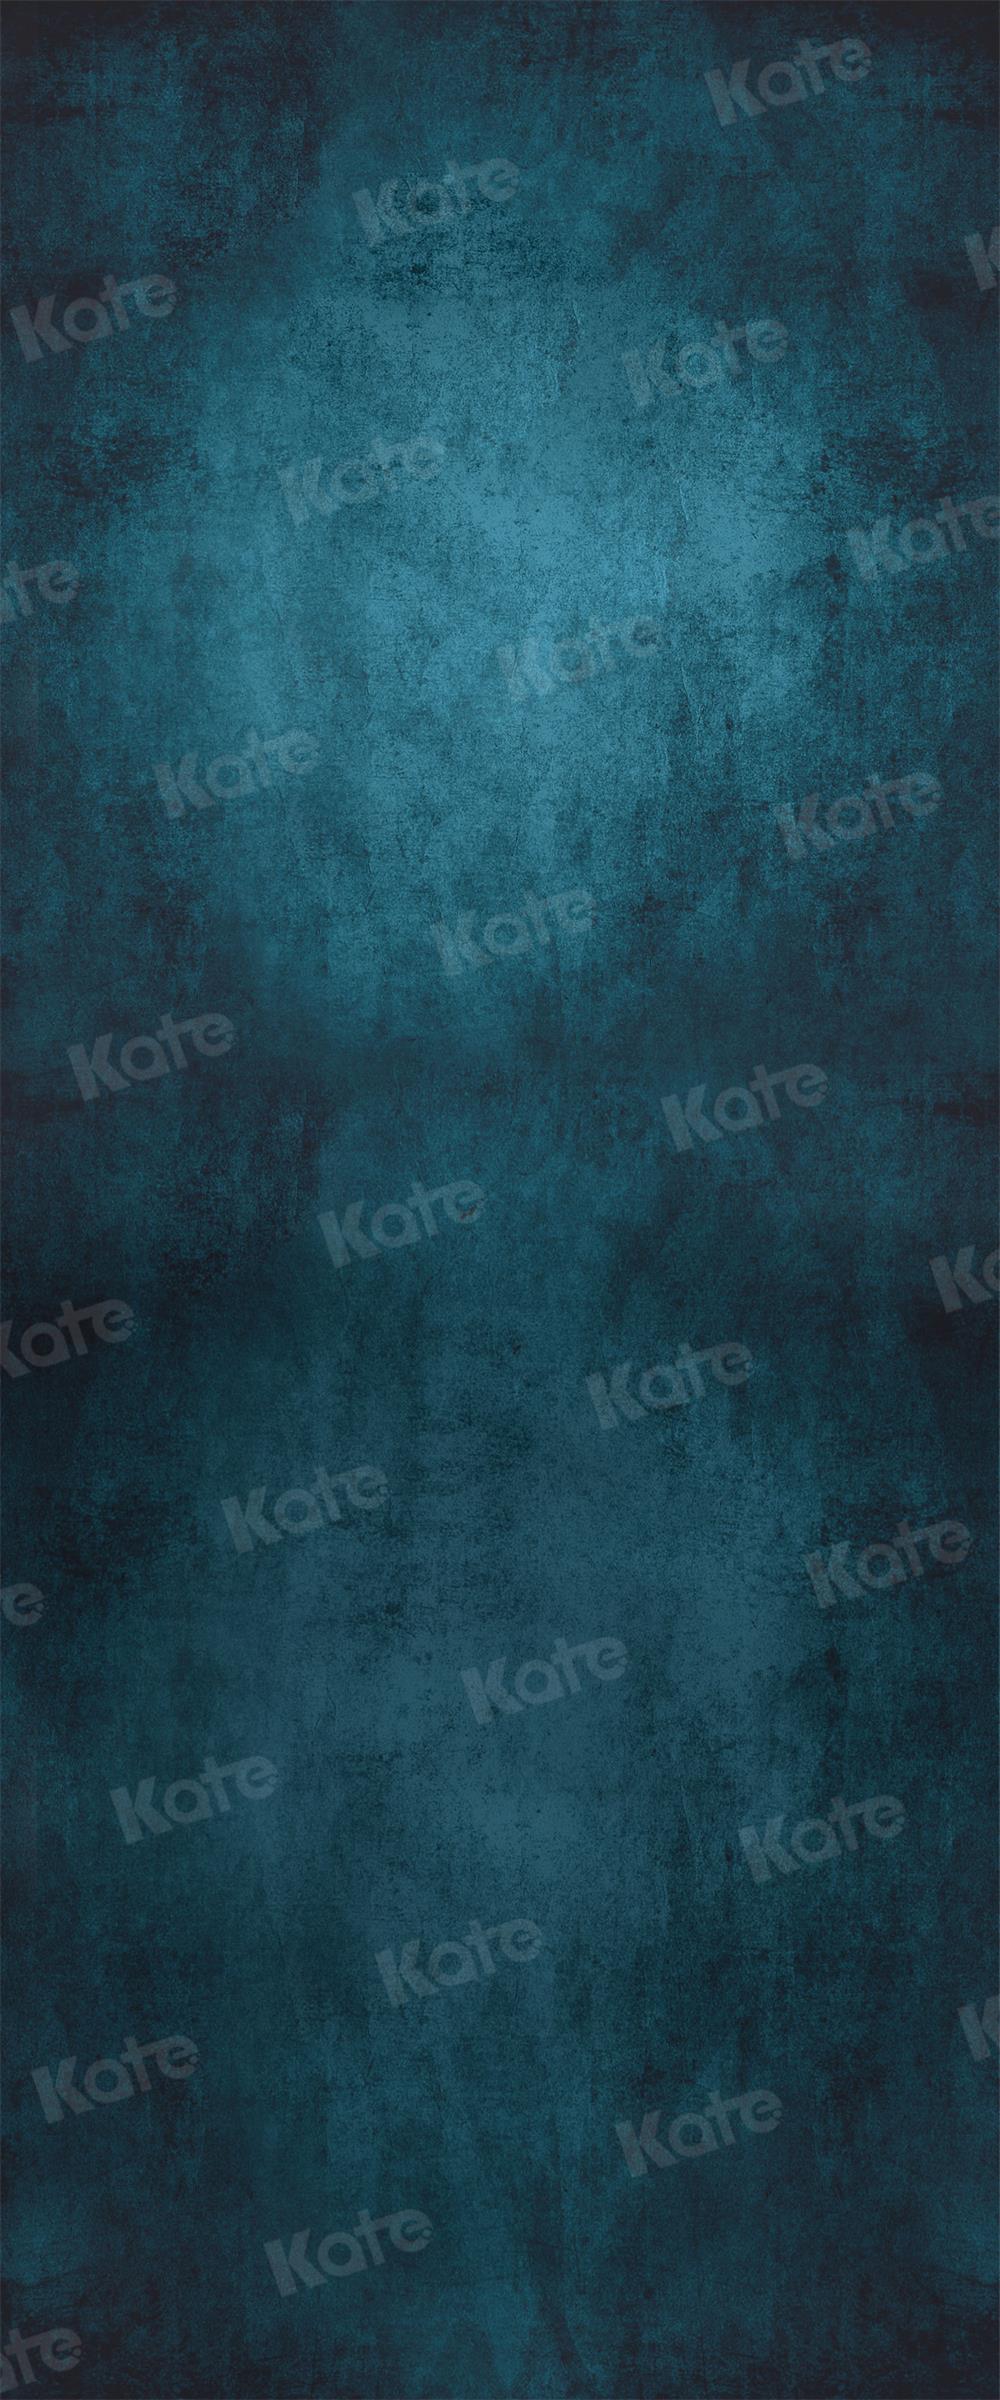 Kate Abstrait Bleu Beaux-Arts Portrait Toile de fond pour la photographie